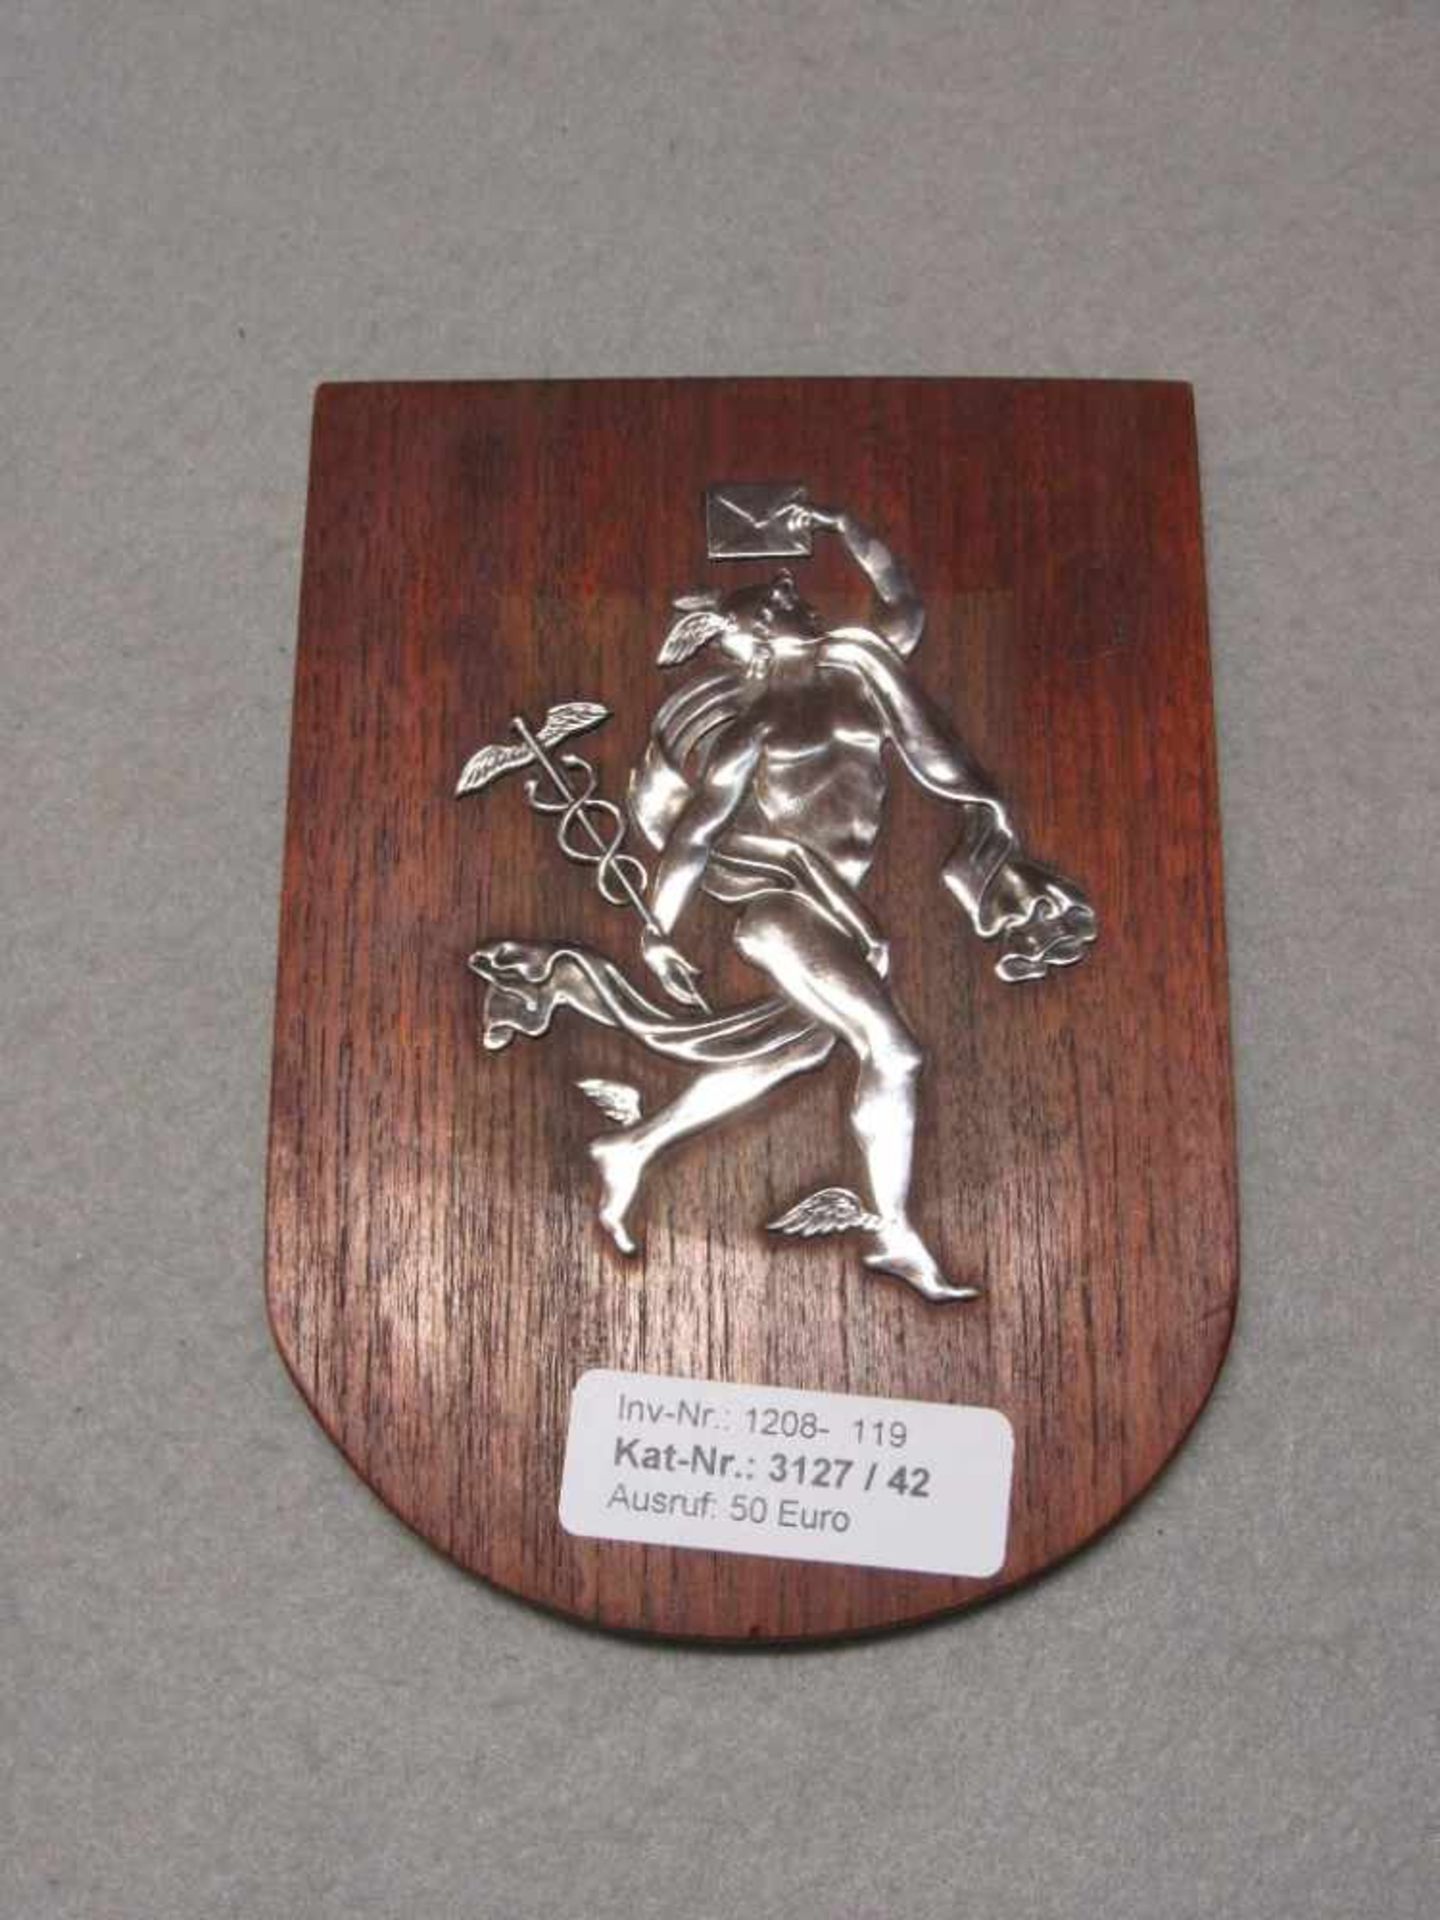 Relief Silber auf Holz Darstellung des Liebesboten Hermes 16x11,5cm- - -20.00 % buyer's premium on